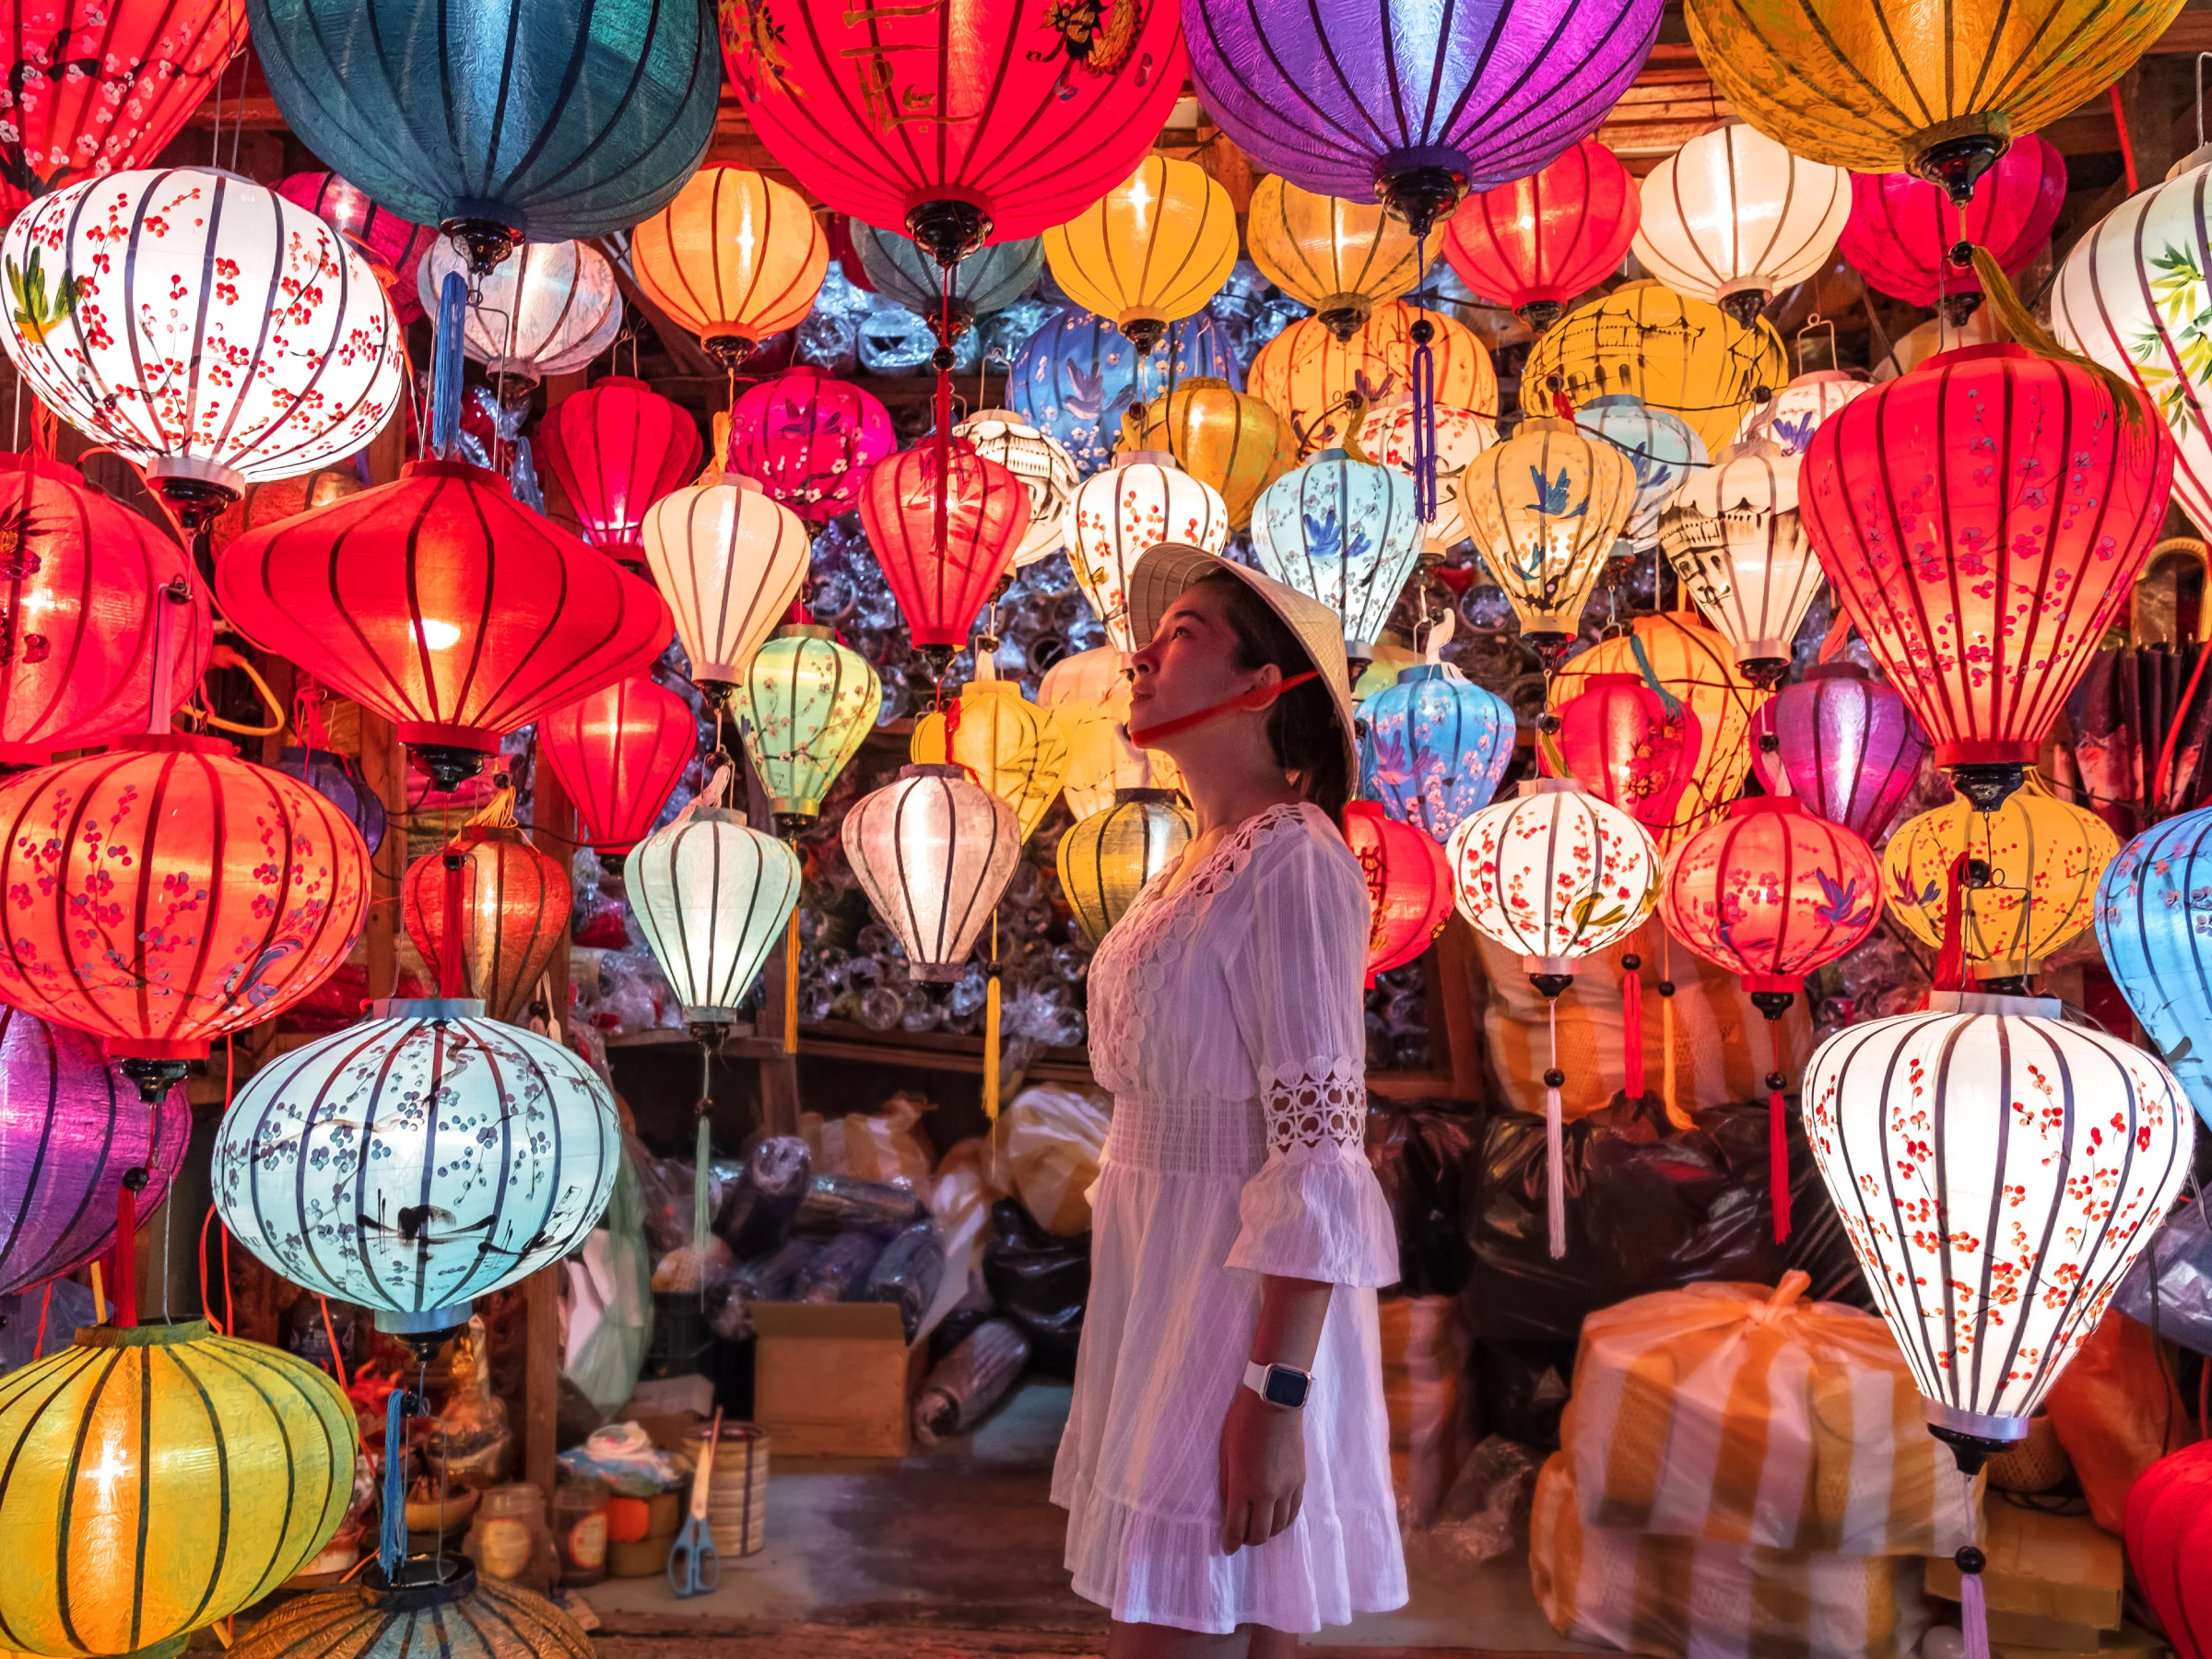 Light a lantern in Hoi An